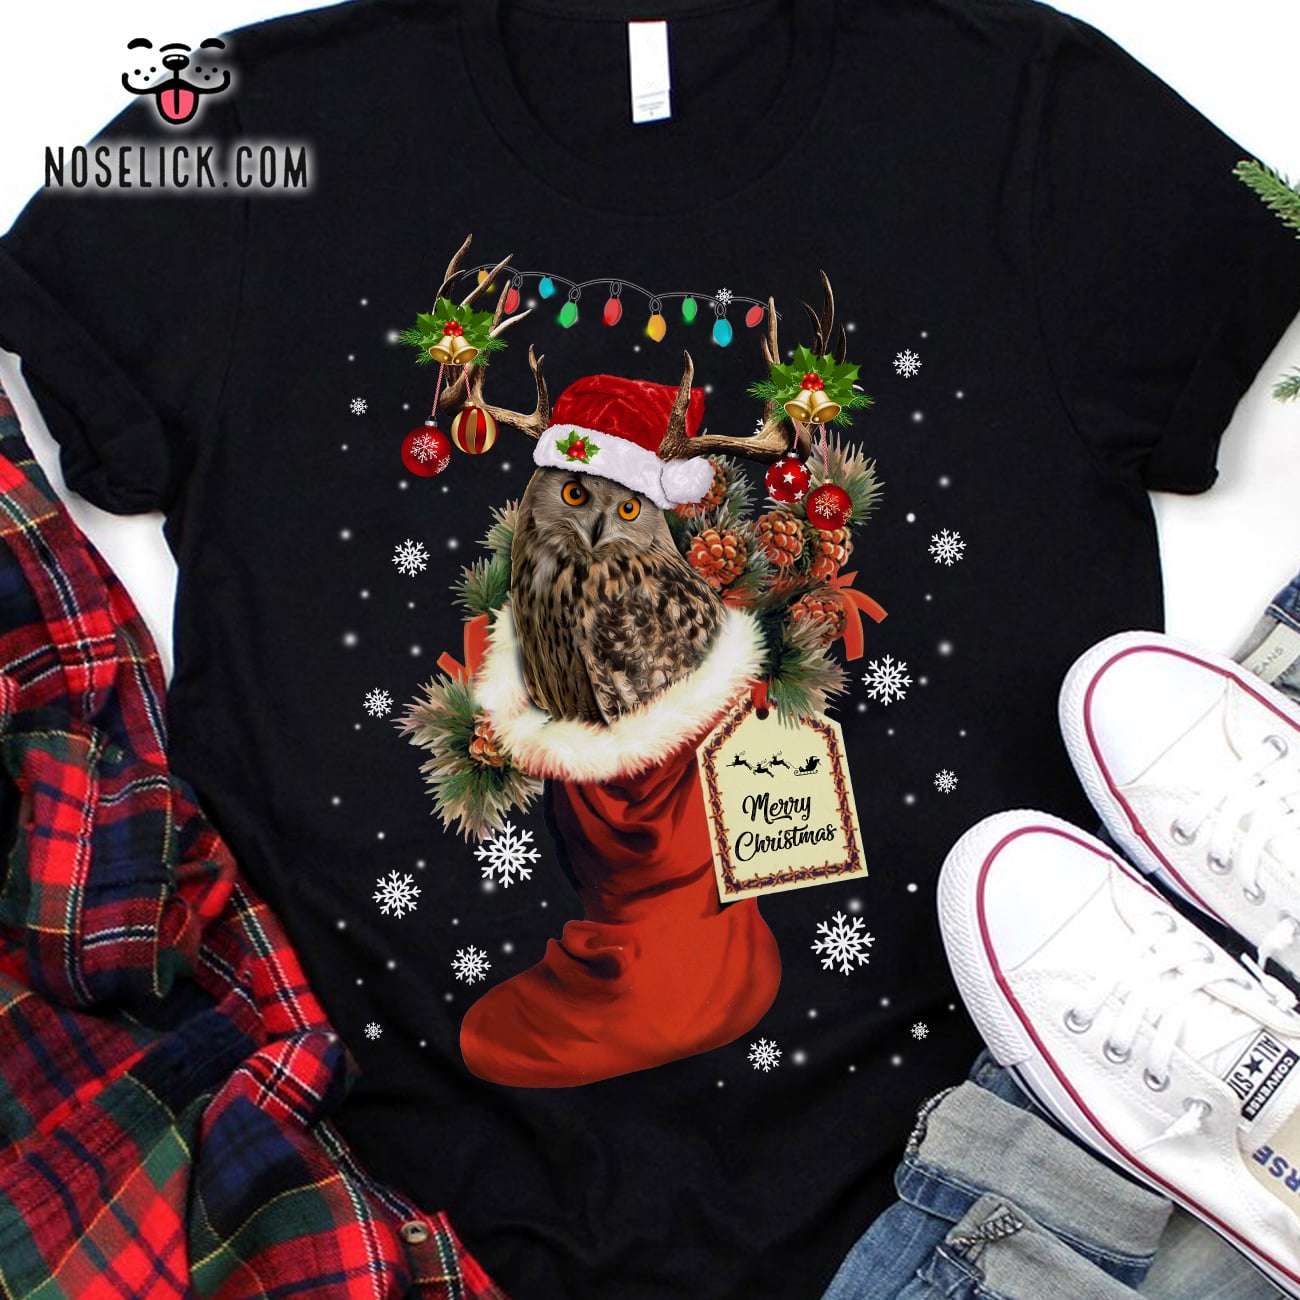 Merry Christmas - Owl and Christmas sock, Christmas Santa Claus